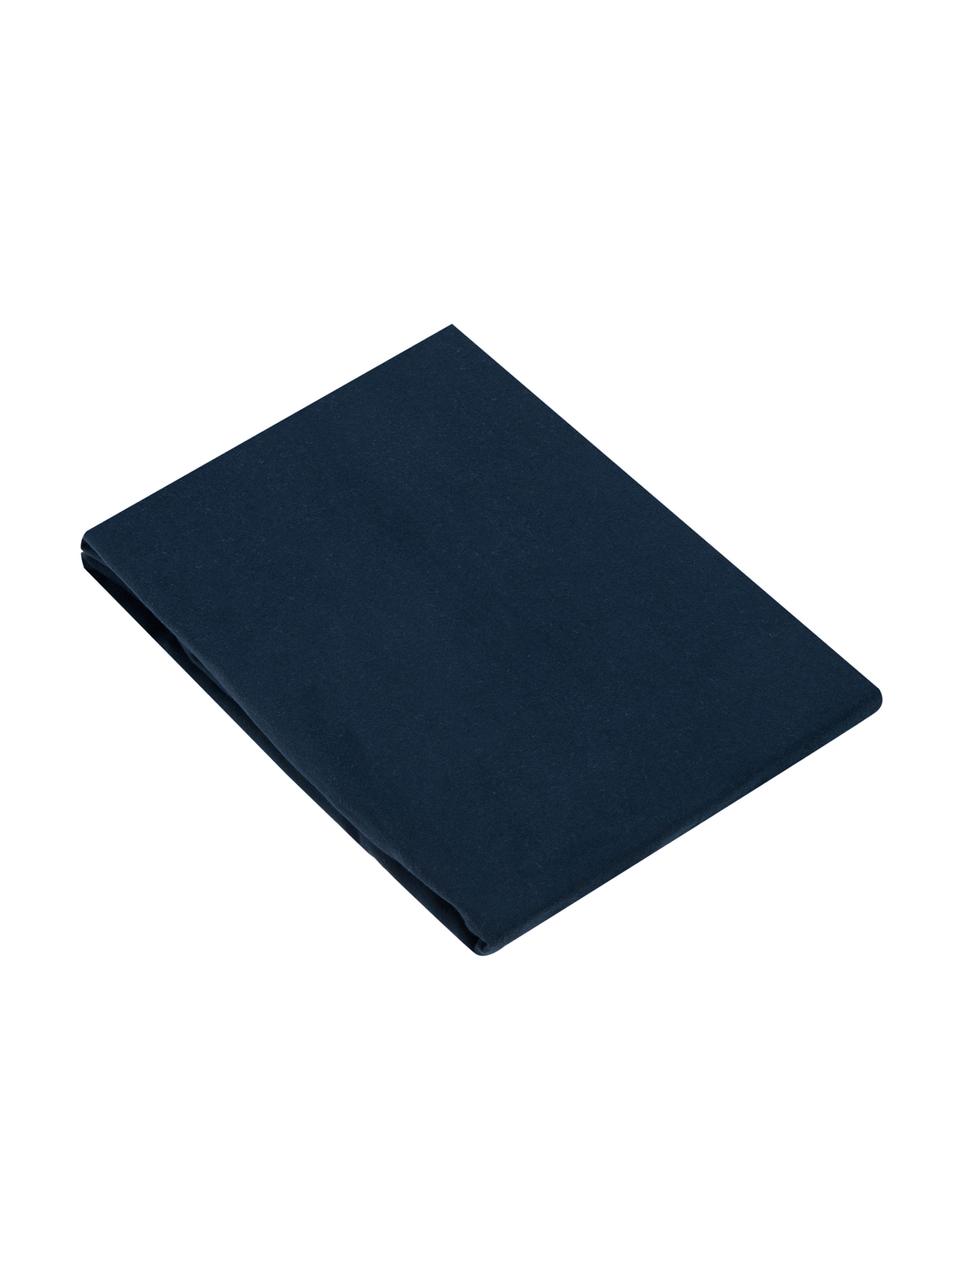 Flanelové napínací prostěradlo Biba, Tmavě modrá, Š 180 cm, D 200 cm